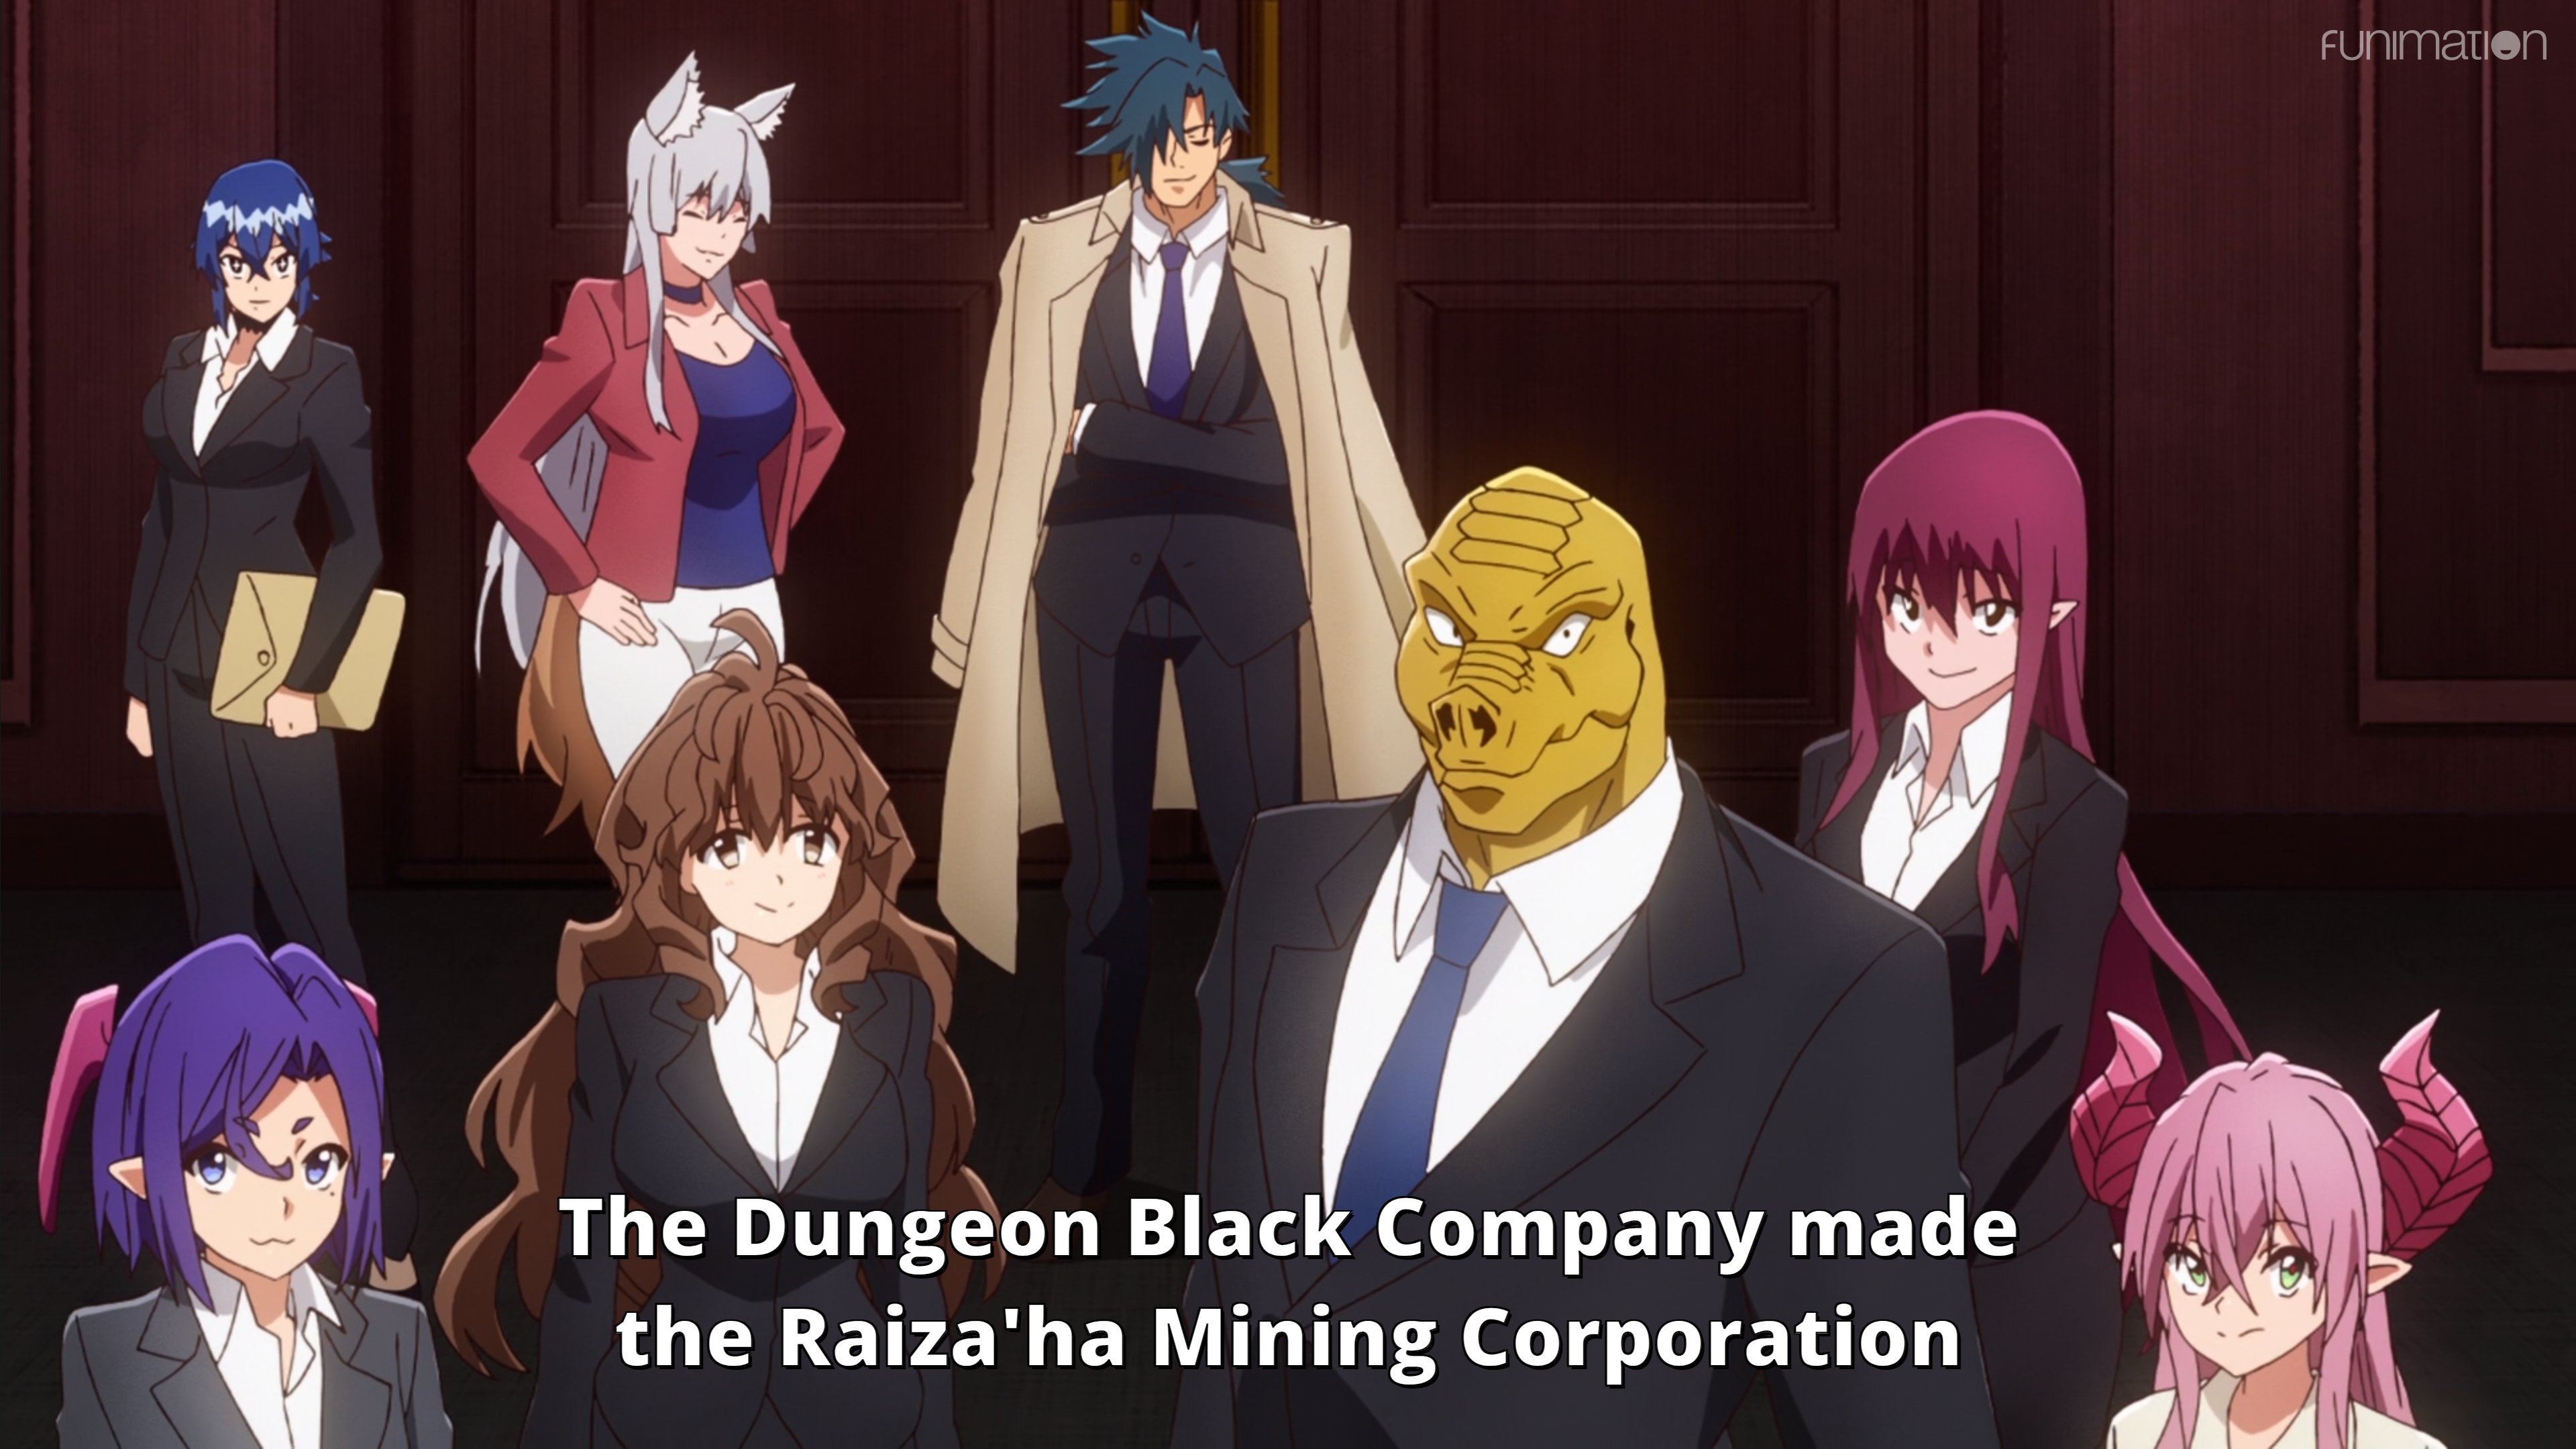 Meikyuu Black Company' estreia na Funimation em breve